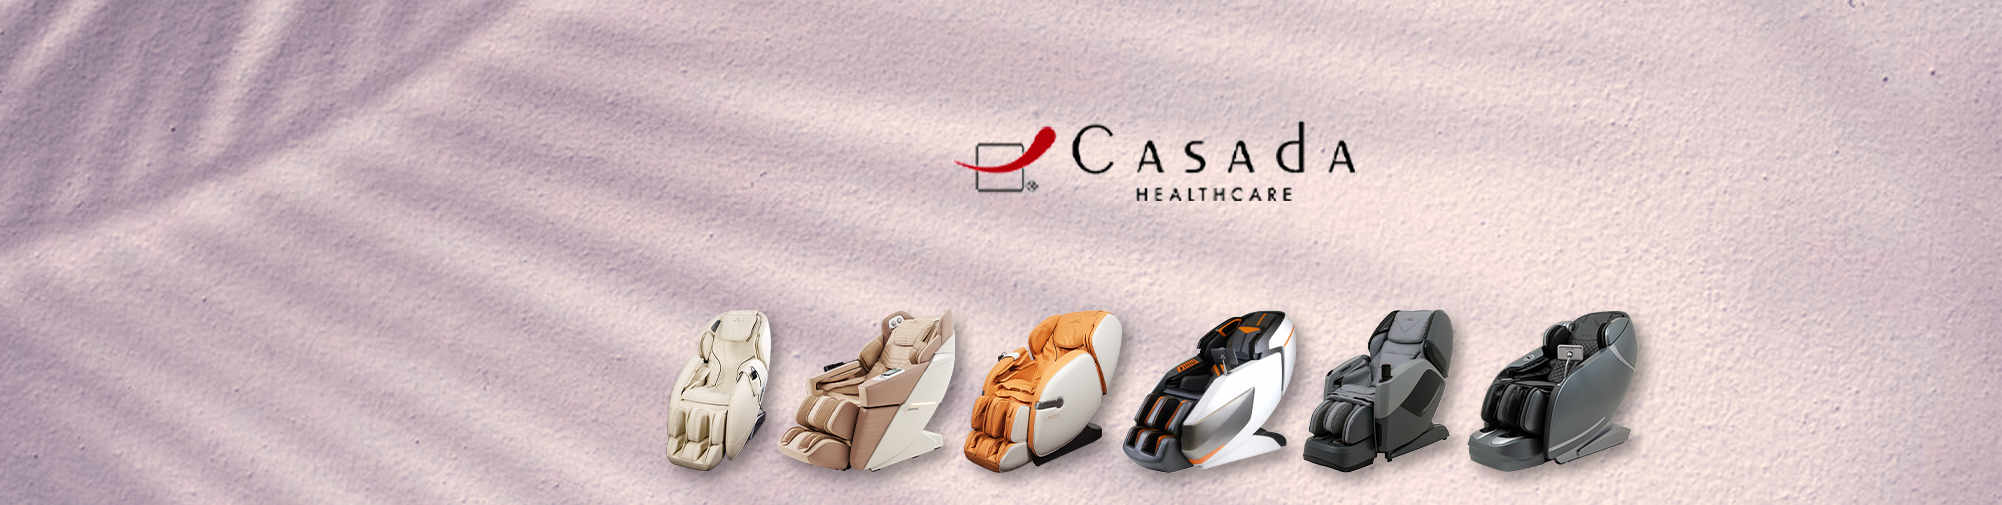 Casada - betrouwbare partner | Massage Chair World